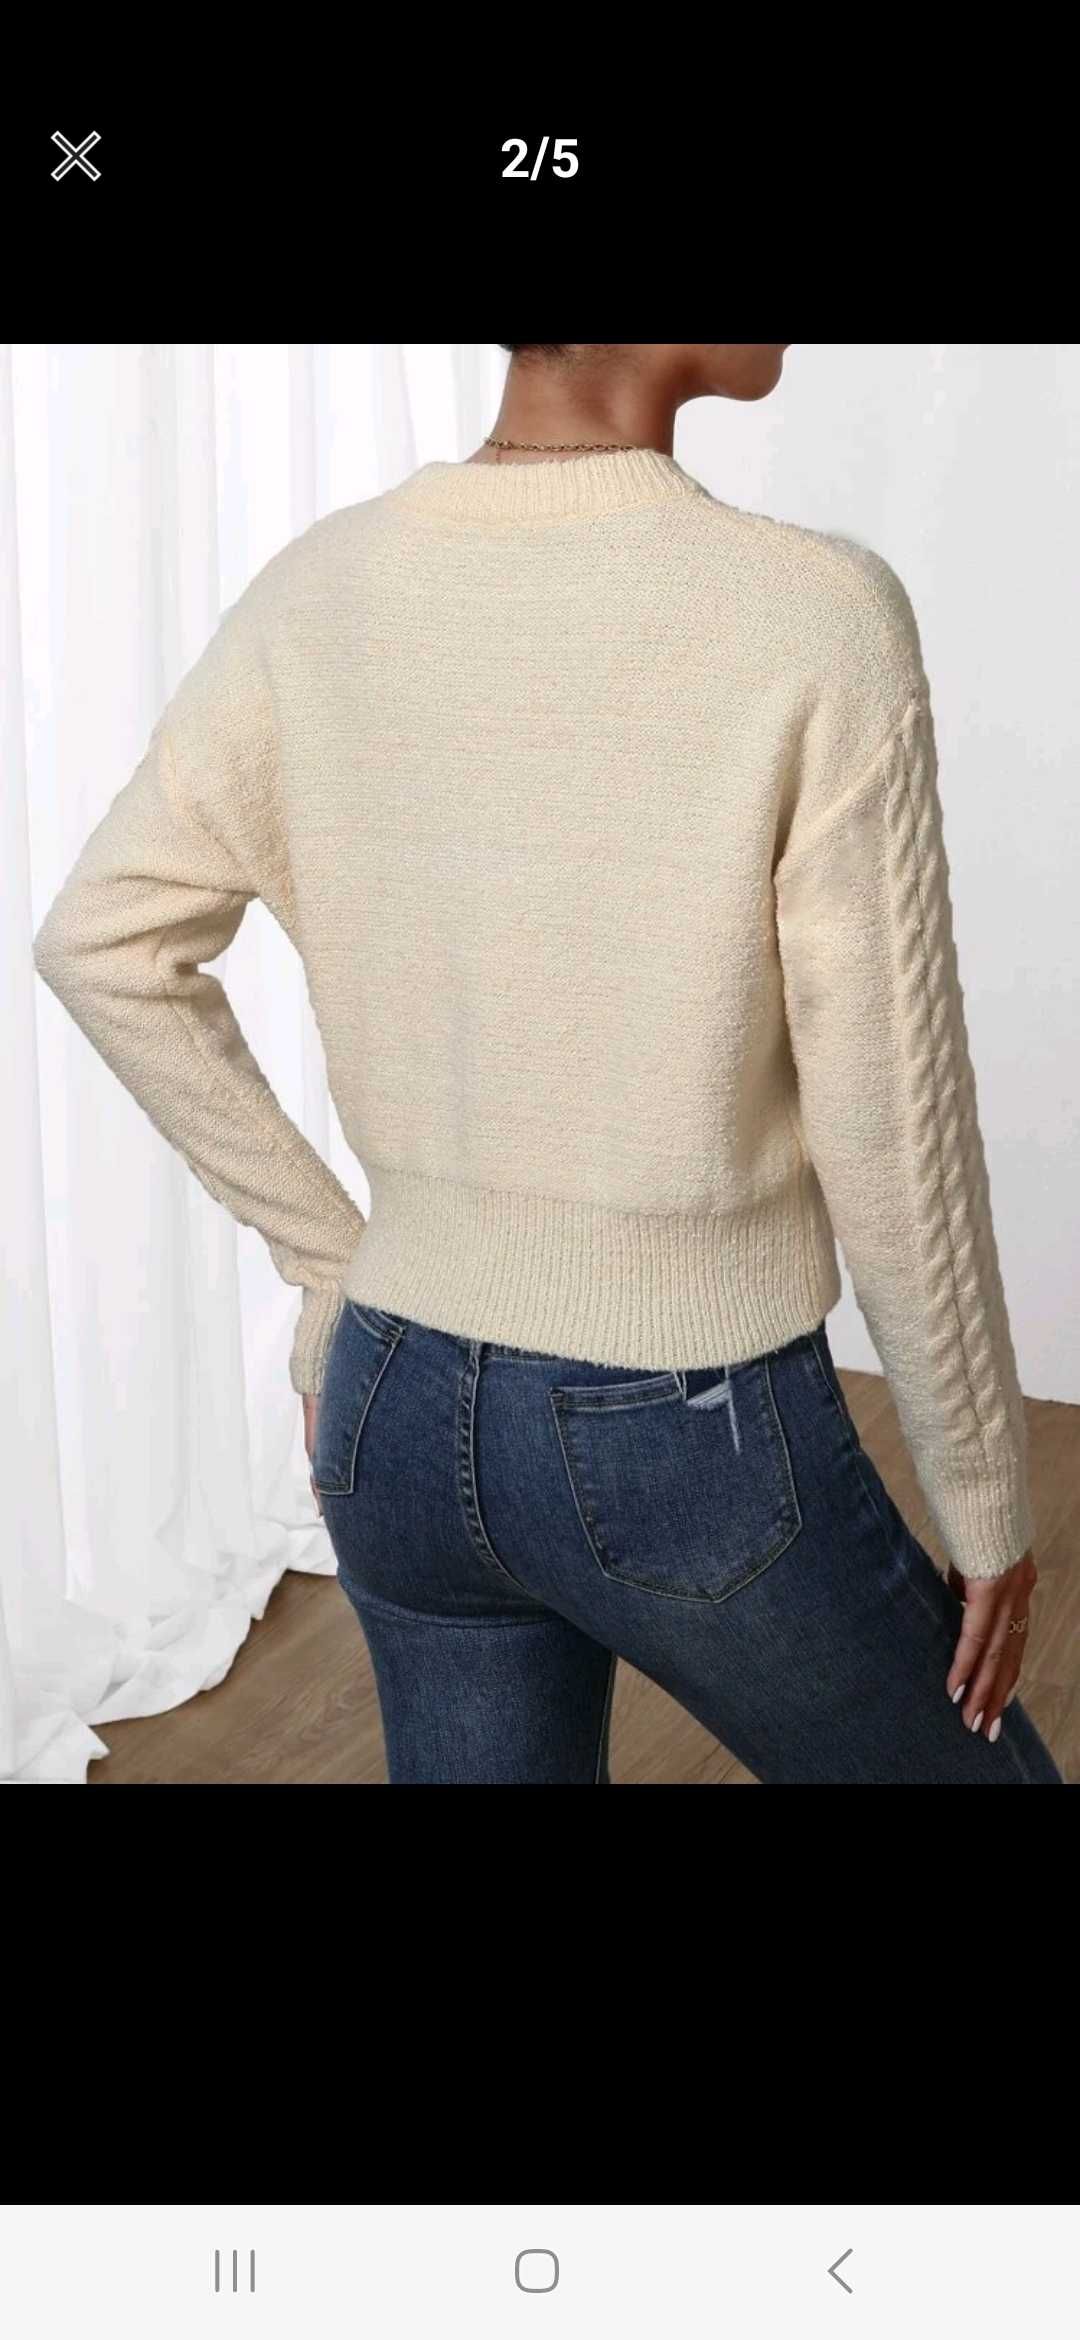 Nowy sweter damski beżowy oversize kremowy sweterek na jesień zimę 36